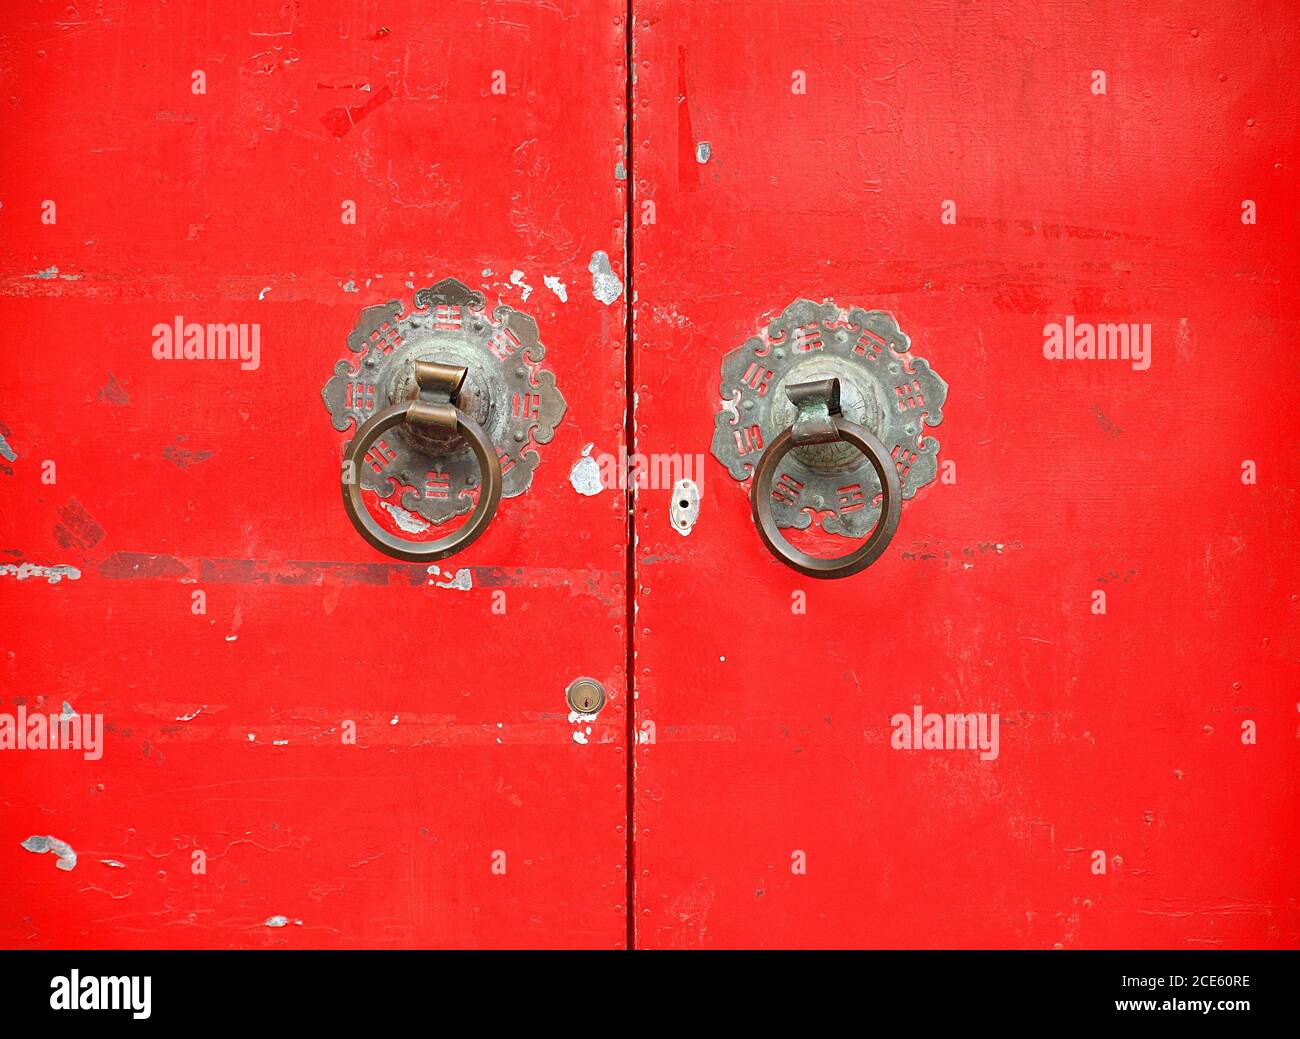 Vieux bronze avec une porte rouge doorknockers qui montrent les symboles taoïstes chinois Banque D'Images